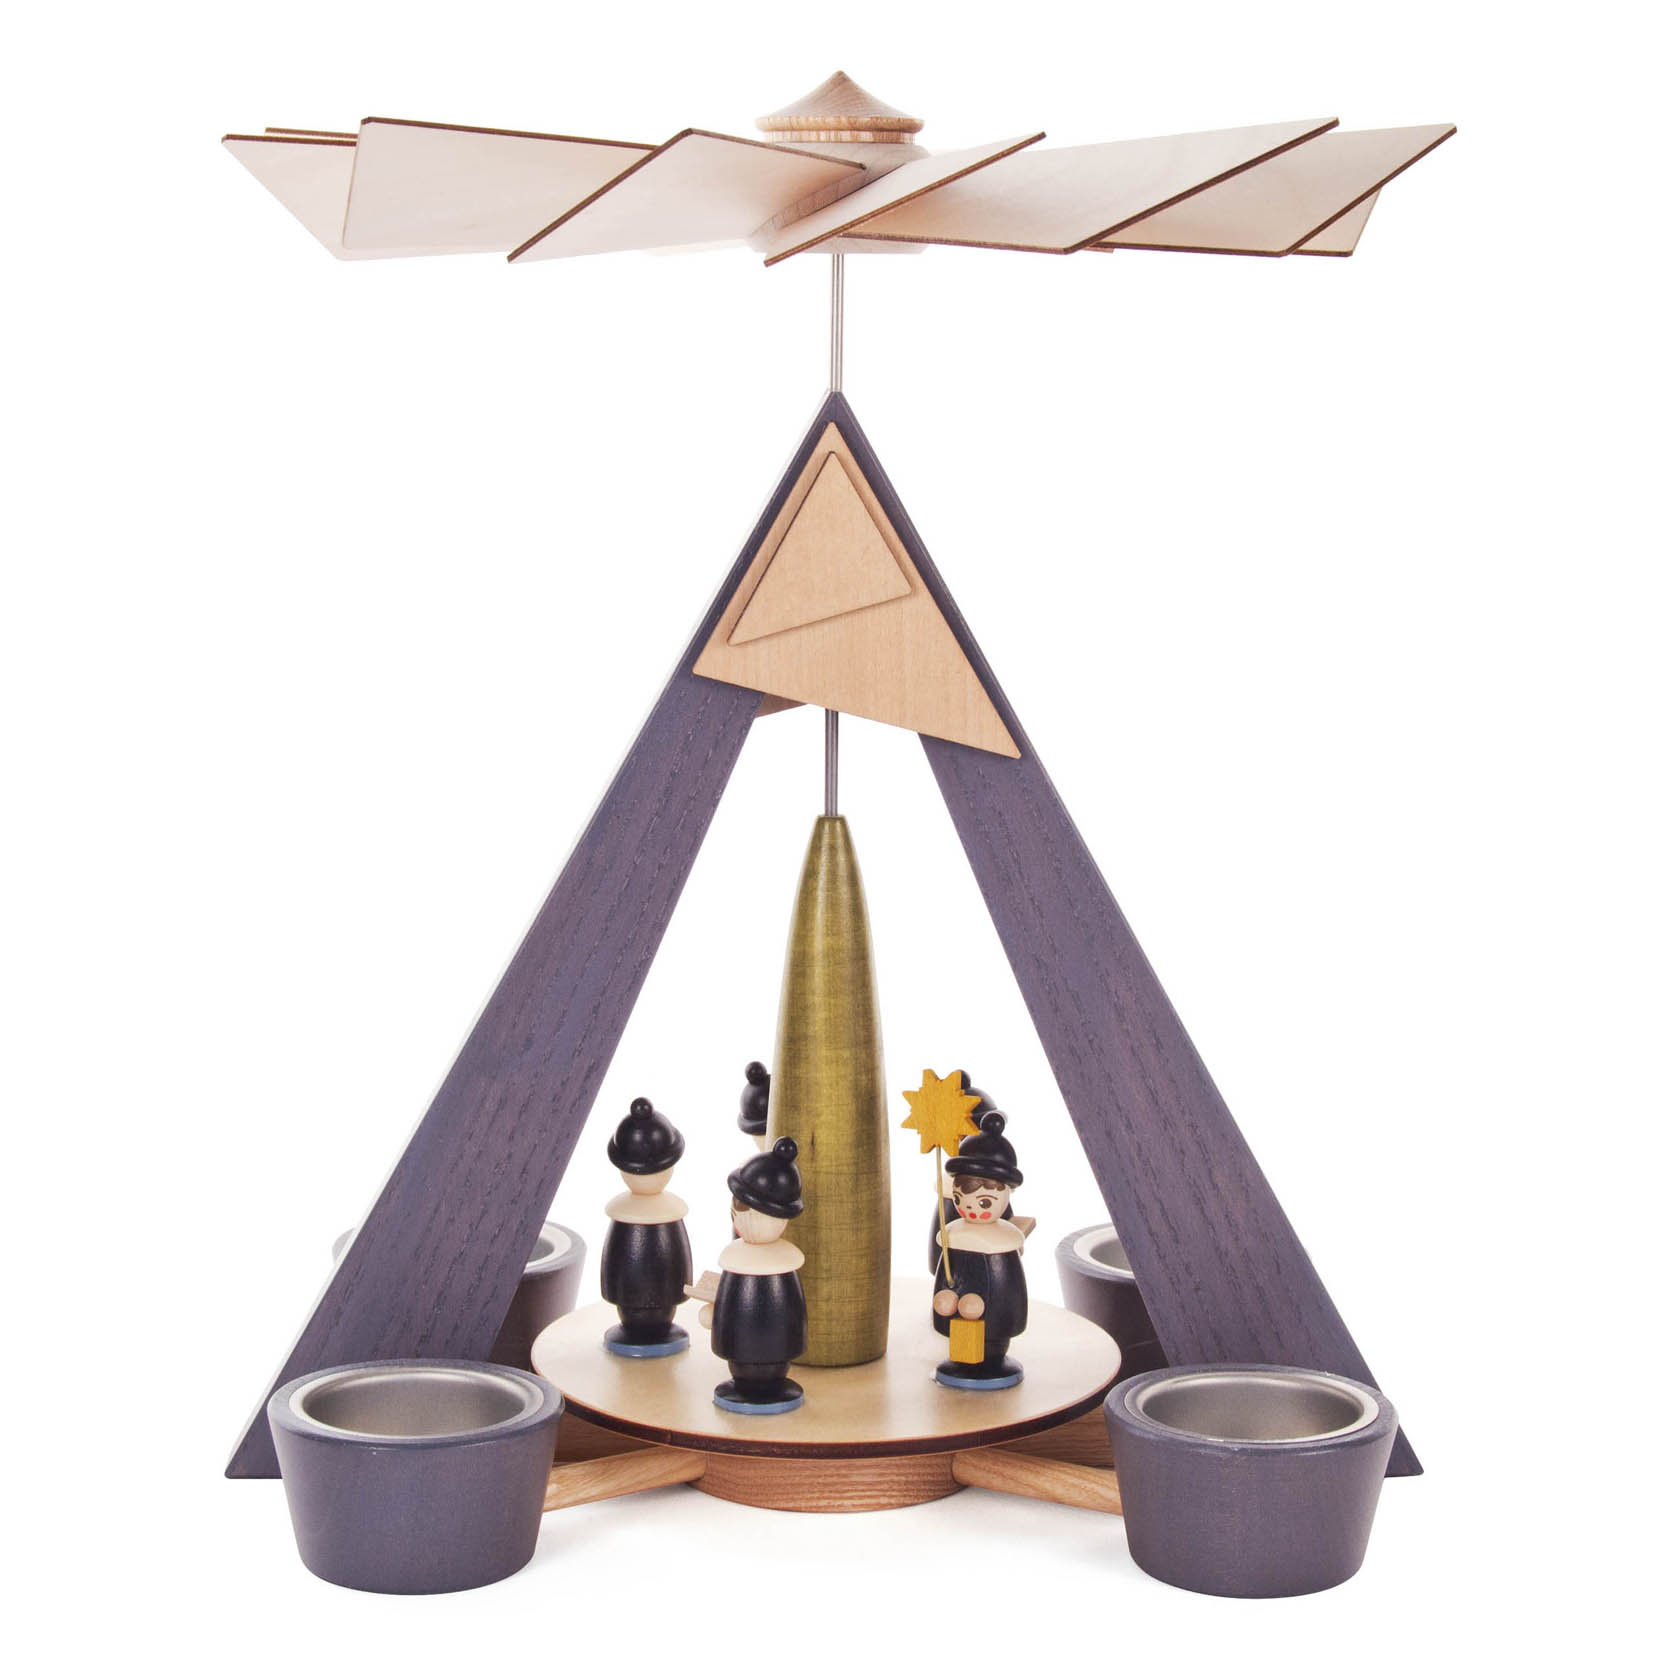 Pyramide mit Kurrende, grau mit farbigen Figuren, für Teelichte